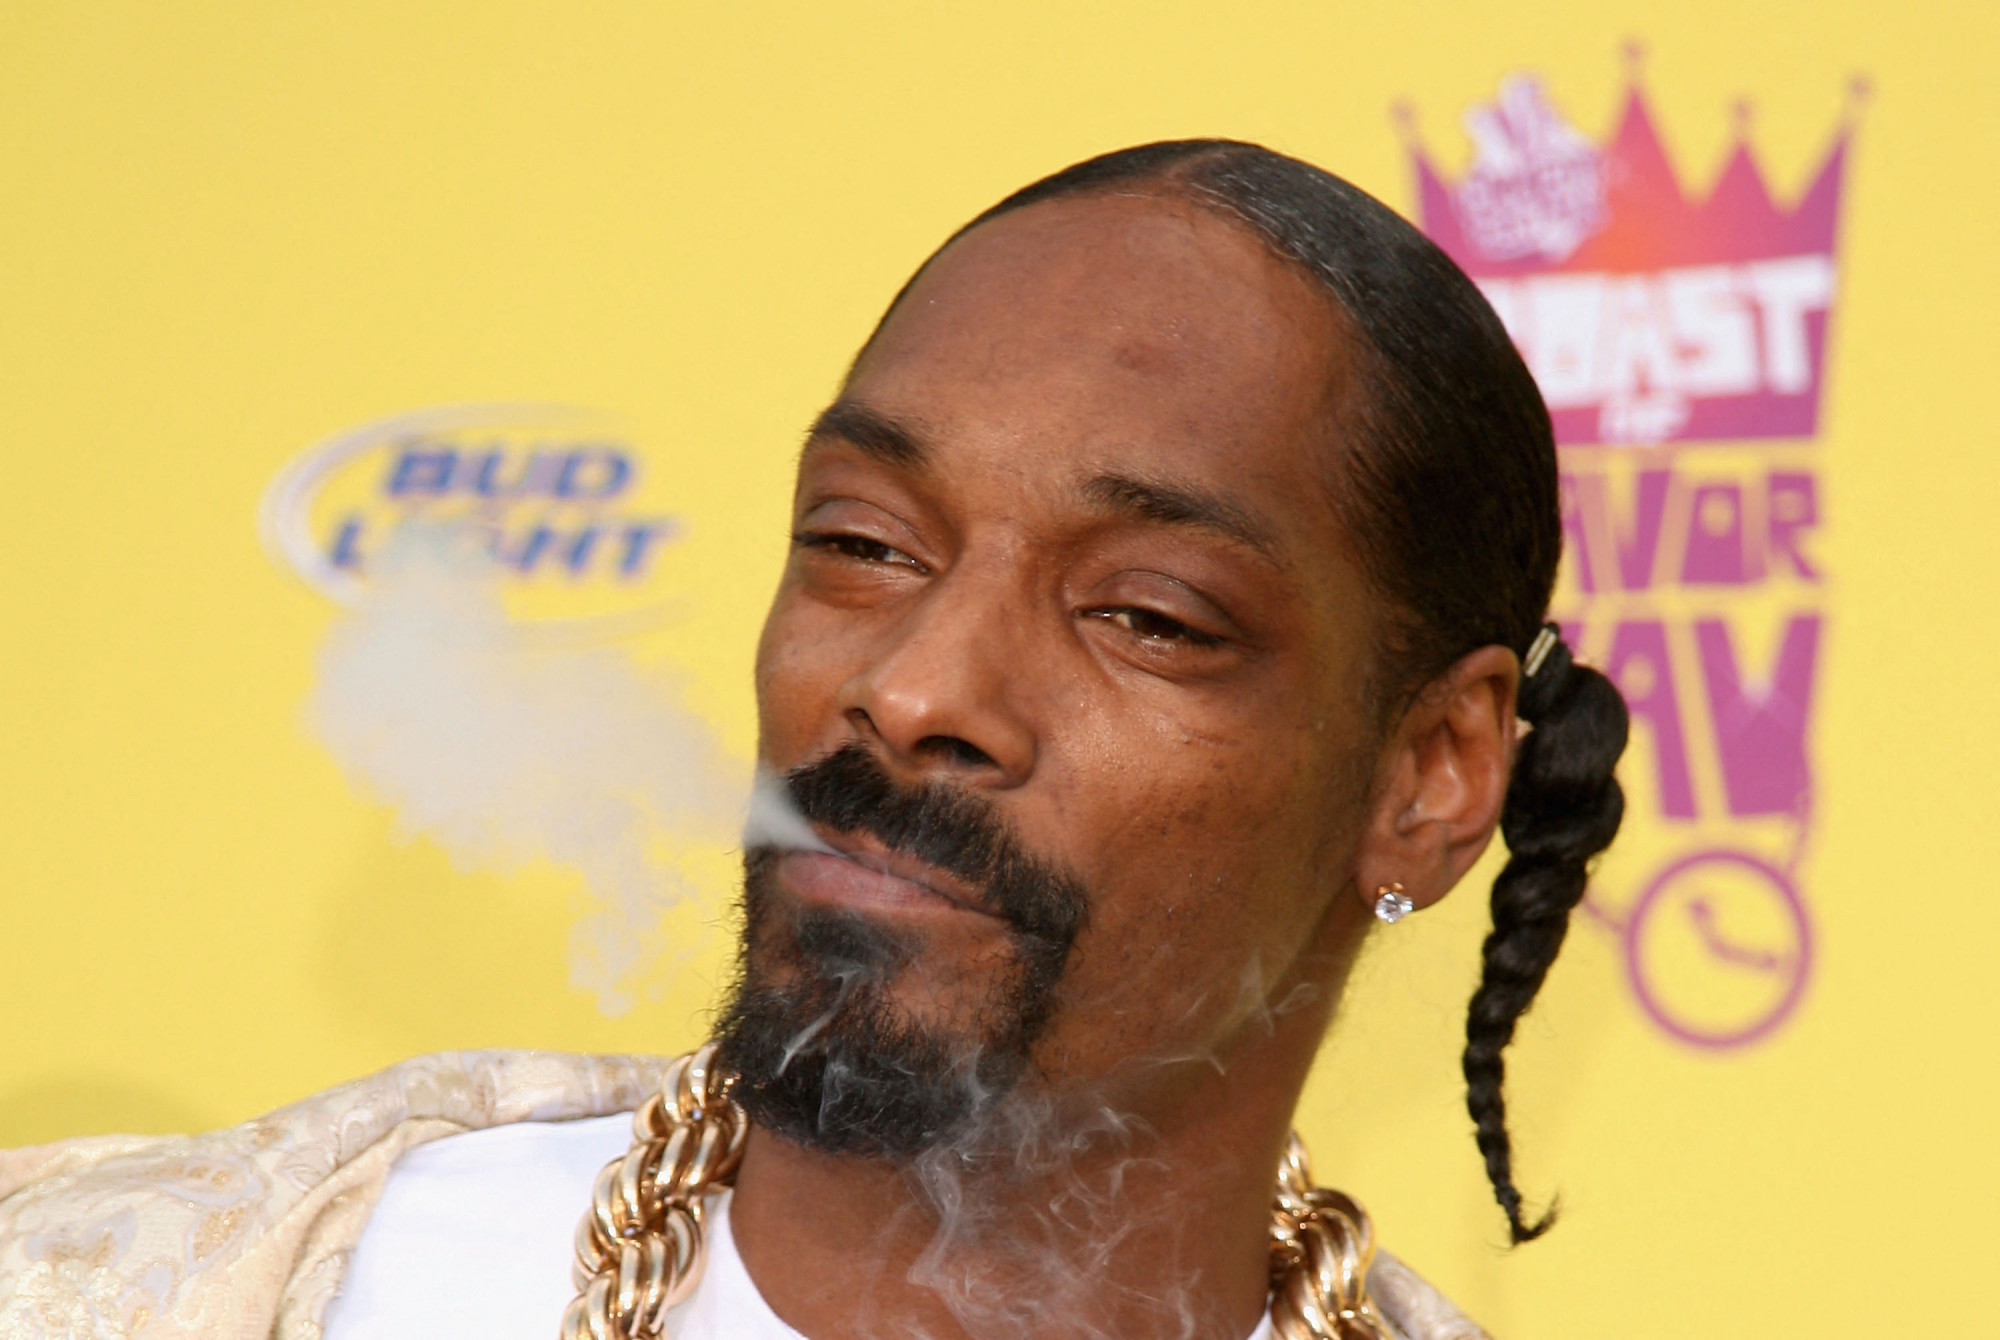 Snoop Dogg tagadja, hogy napi 100 jointot szív el, ahogy azt a cigitekerésért felelős személyi asszisztense állítja